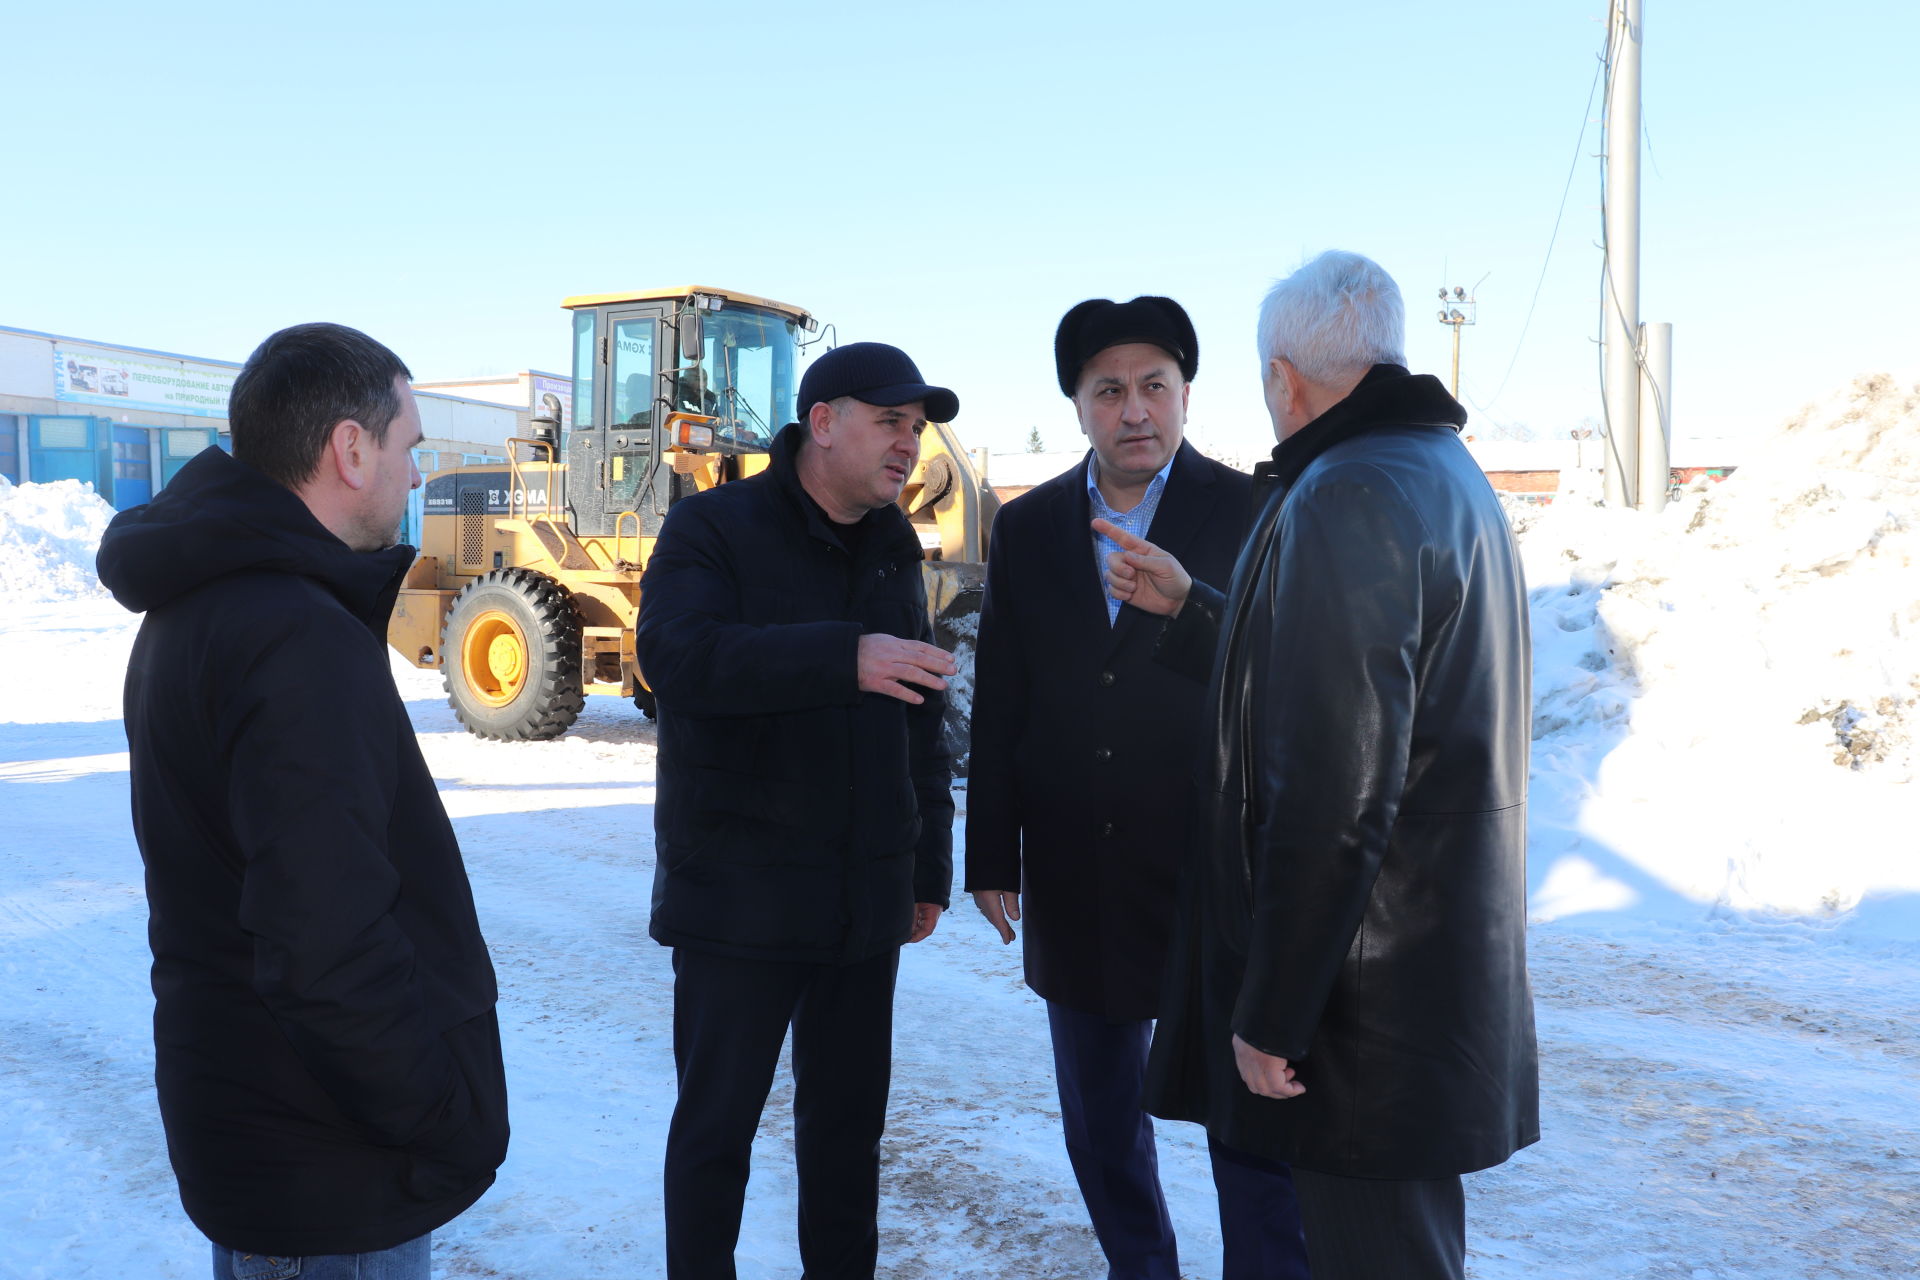 Депутат Государственной Думы РФ ознакомился с деятельностью промышленных площадок в Азнакаево